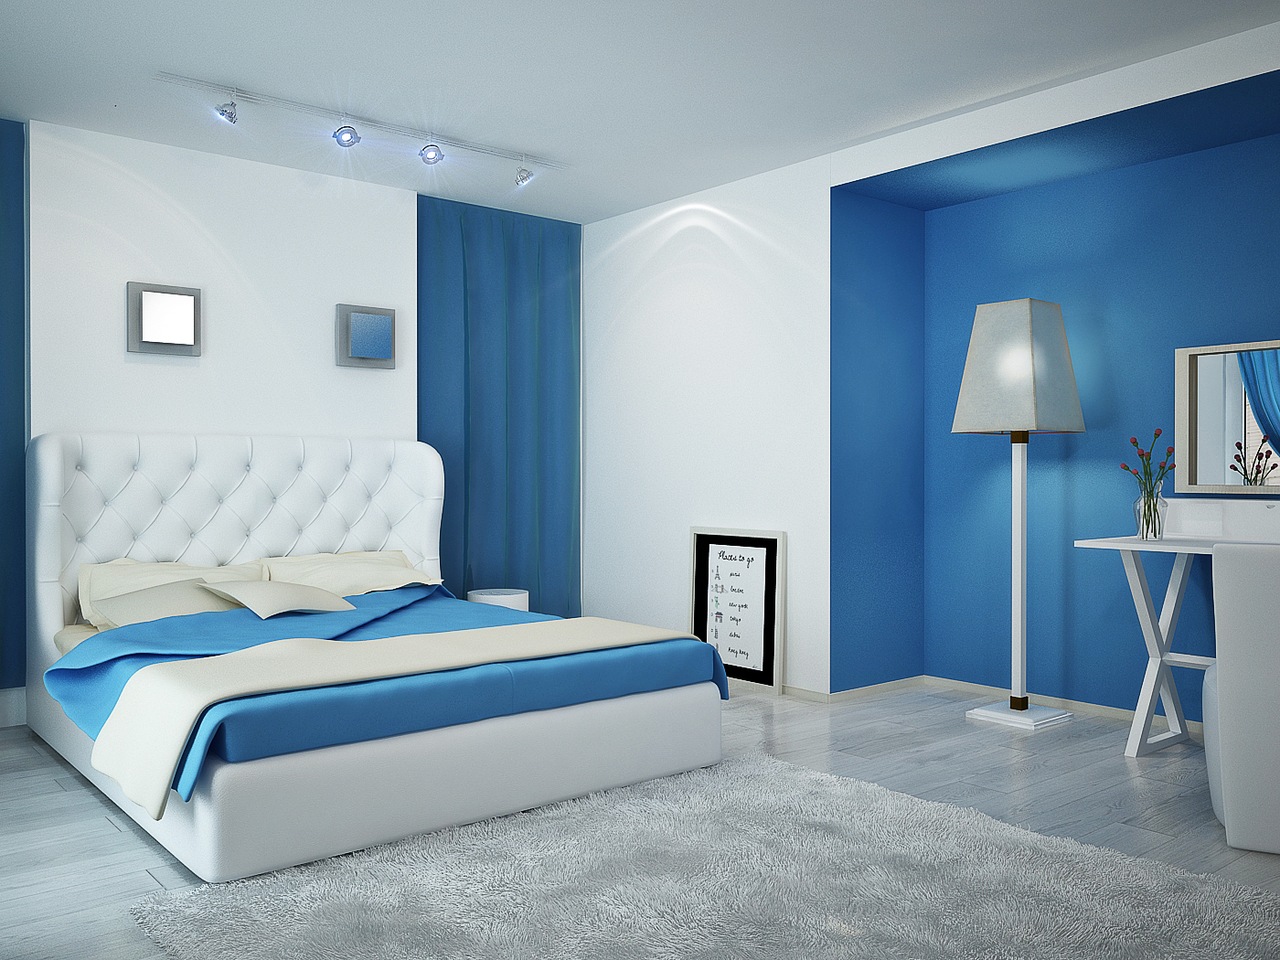 Разные типы освещения в сине-белой спальне